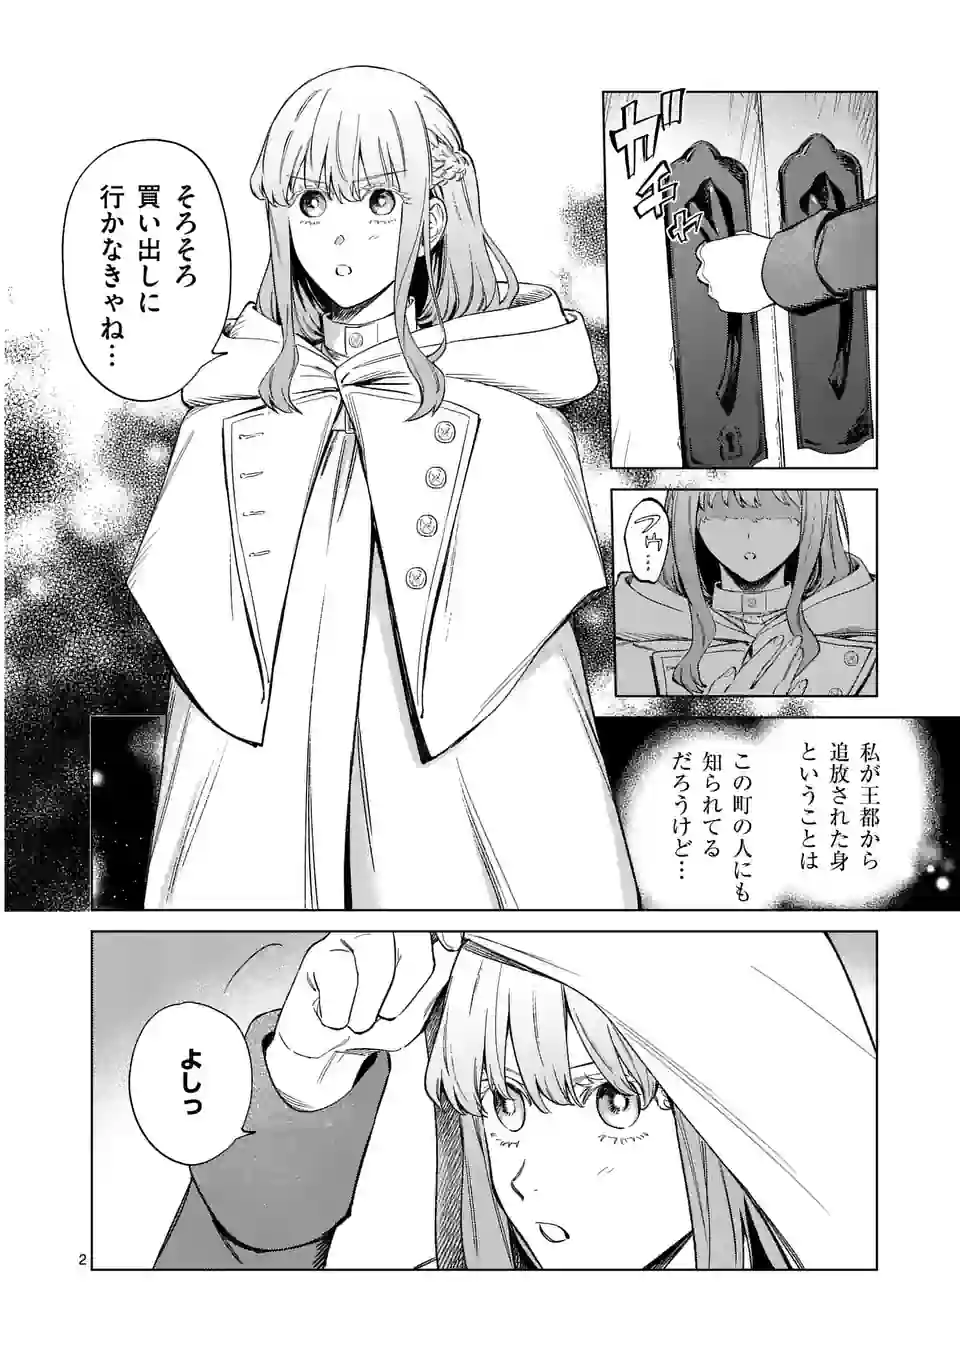 Mou Kyoumi ga Nai to Rikonsareta Reijou no Igai to Tanoshii Shinseikatsu - Chapter 5 - Page 2